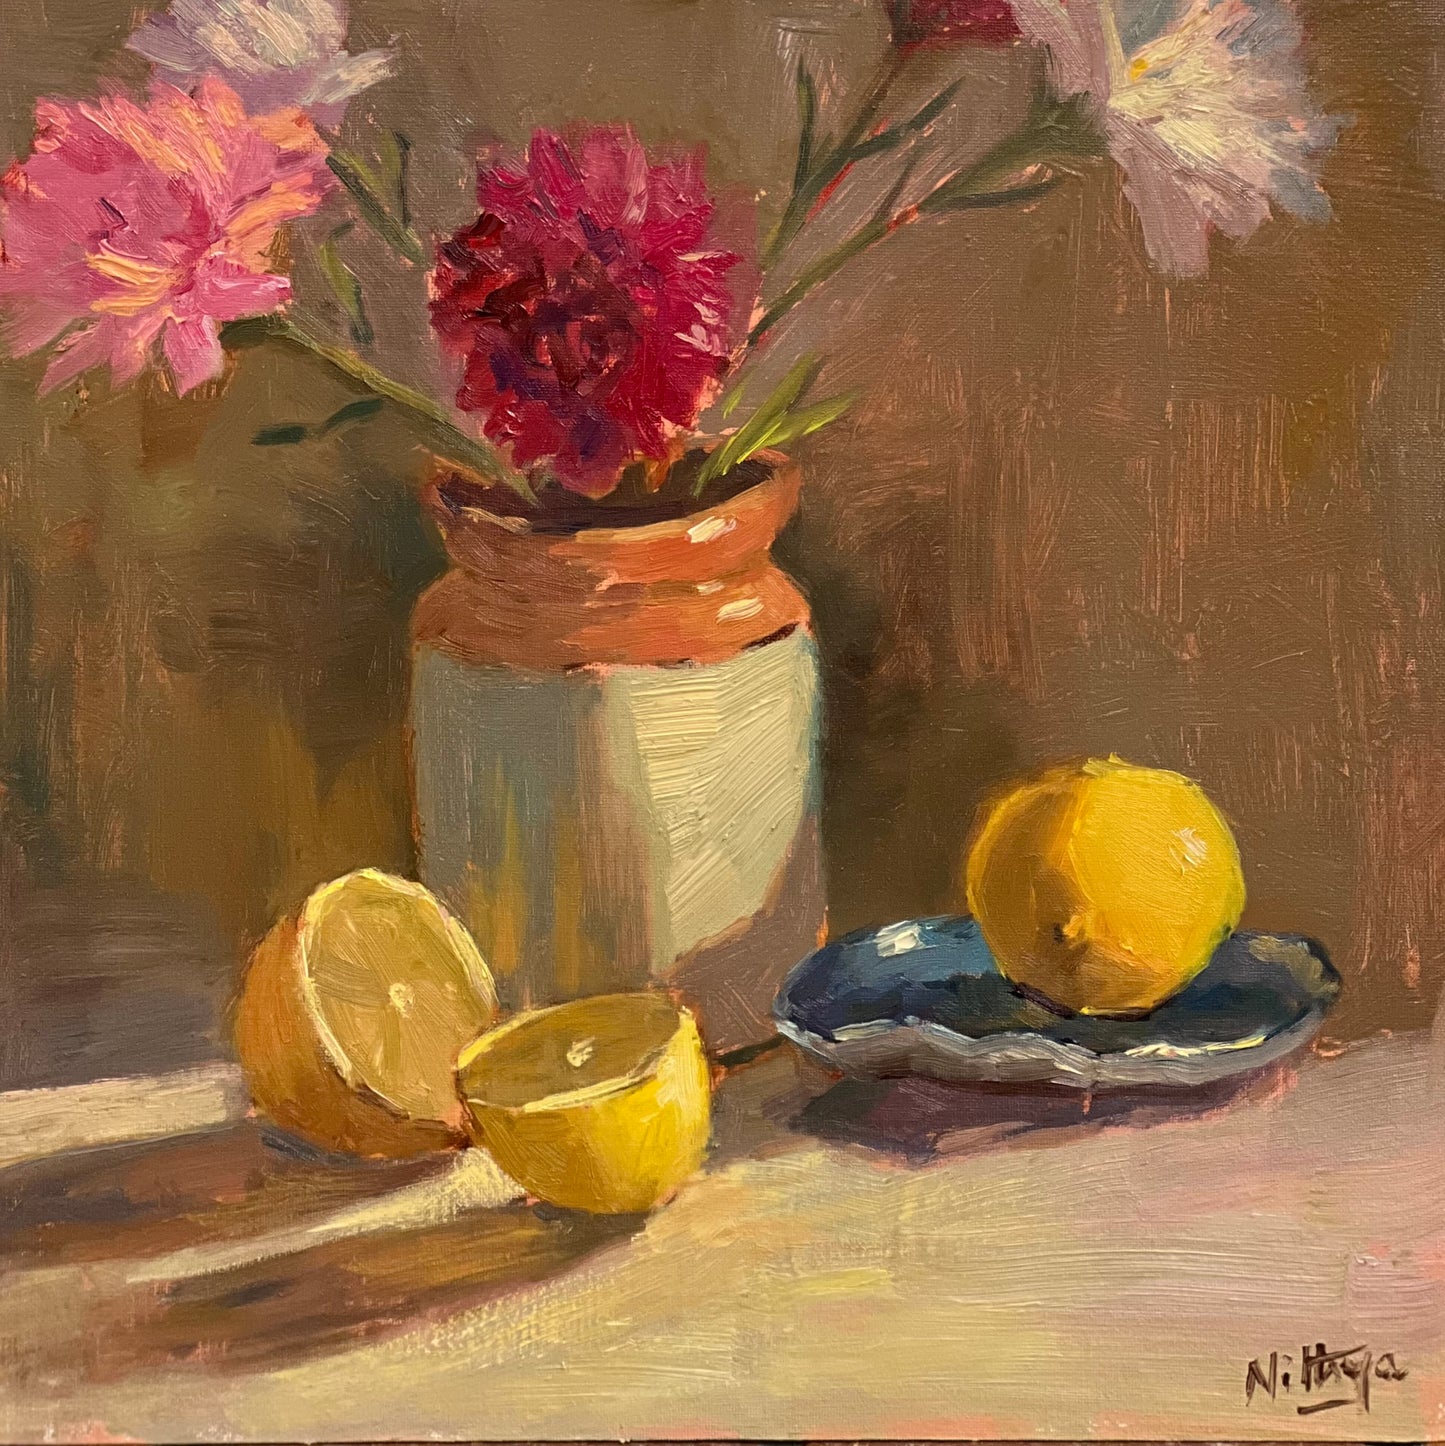 Sunlit jar of flowers and lemons - still life oil painting